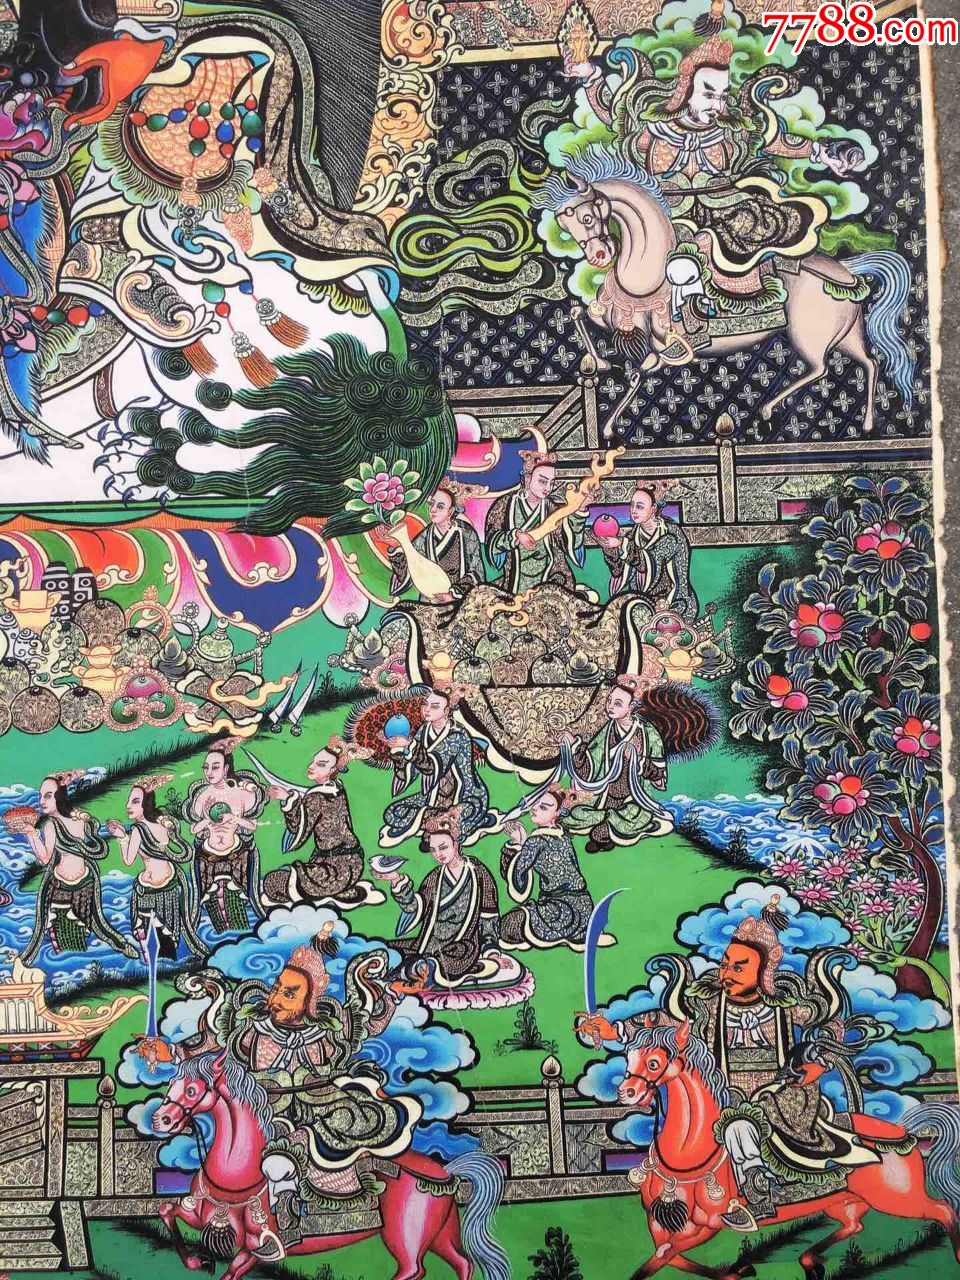 西藏唐卡八方财神画芯旧唐卡,未装裱,此唐卡早期丝绢纸印刷